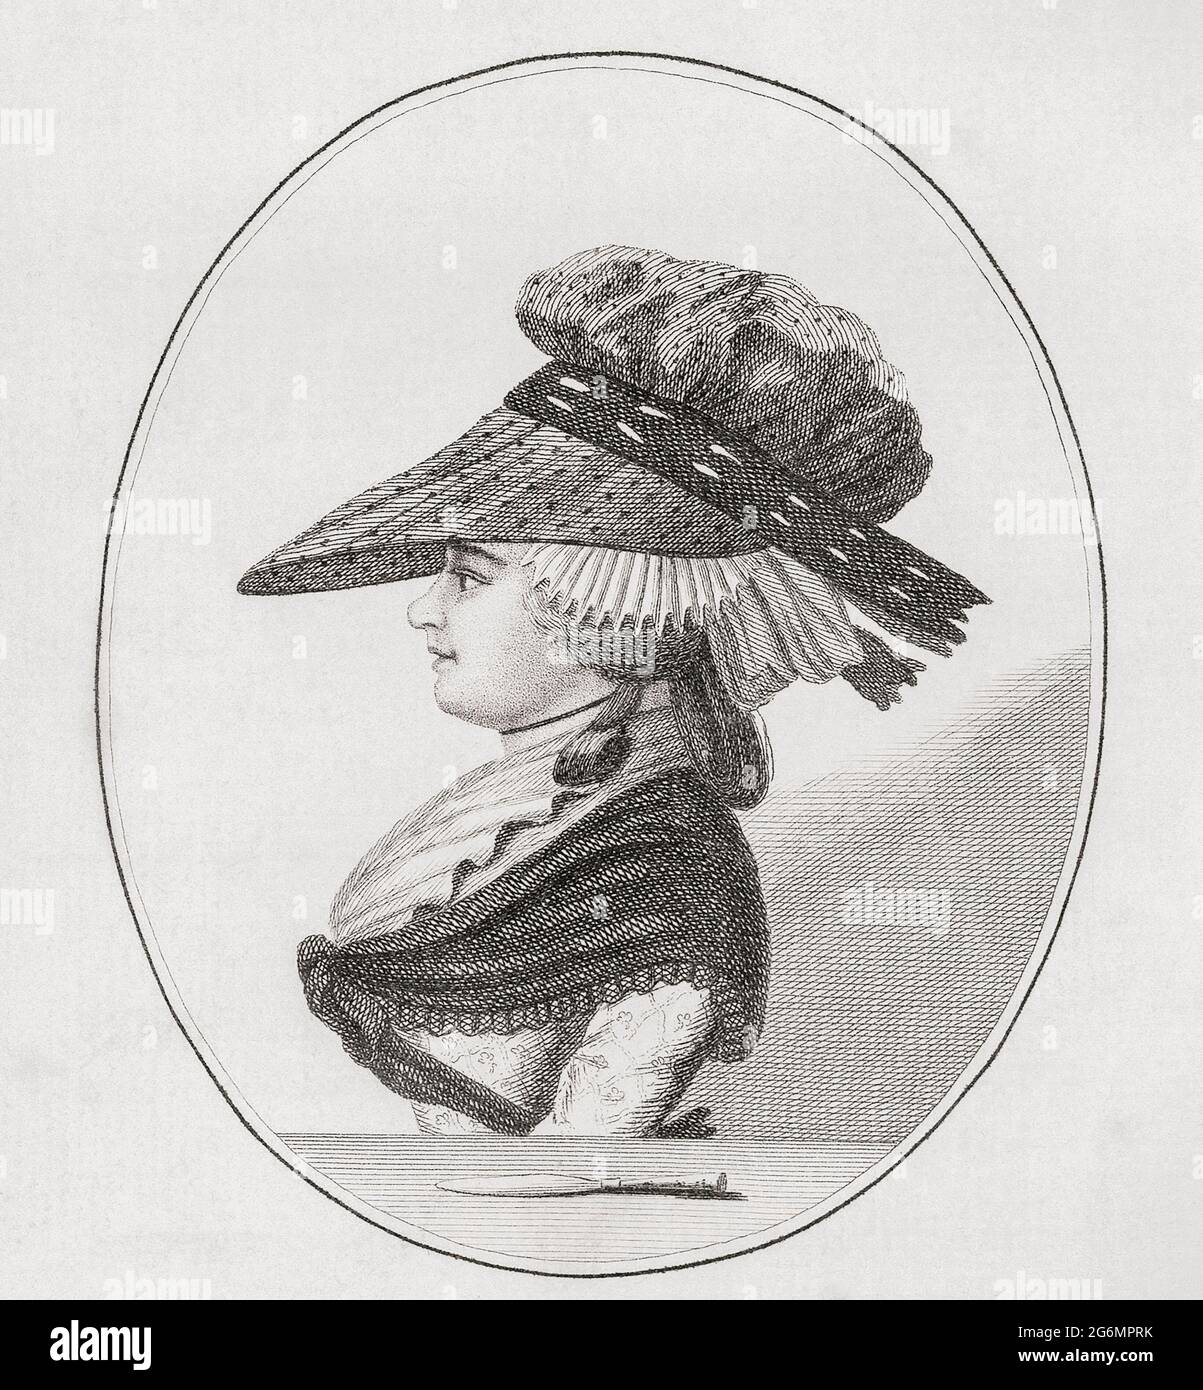 Margaret Nicholson, c. 1750 – 1828. Engländerin, die 1786 versuchte, König George III. Mit einem Dessertmesser zu ermorden. Der König war unverletzt. Nicholson schien sich selbst als Thronfolgerin zu betrachten. Sie wurde als geisteskrank zertifiziert und wurde ins Königliche Krankenhaus von Bethlem gebracht, wo sie 42 Jahre später starb. Nach einem zeitgenössischen Druck eines unbekannten Künstlers. Stockfoto